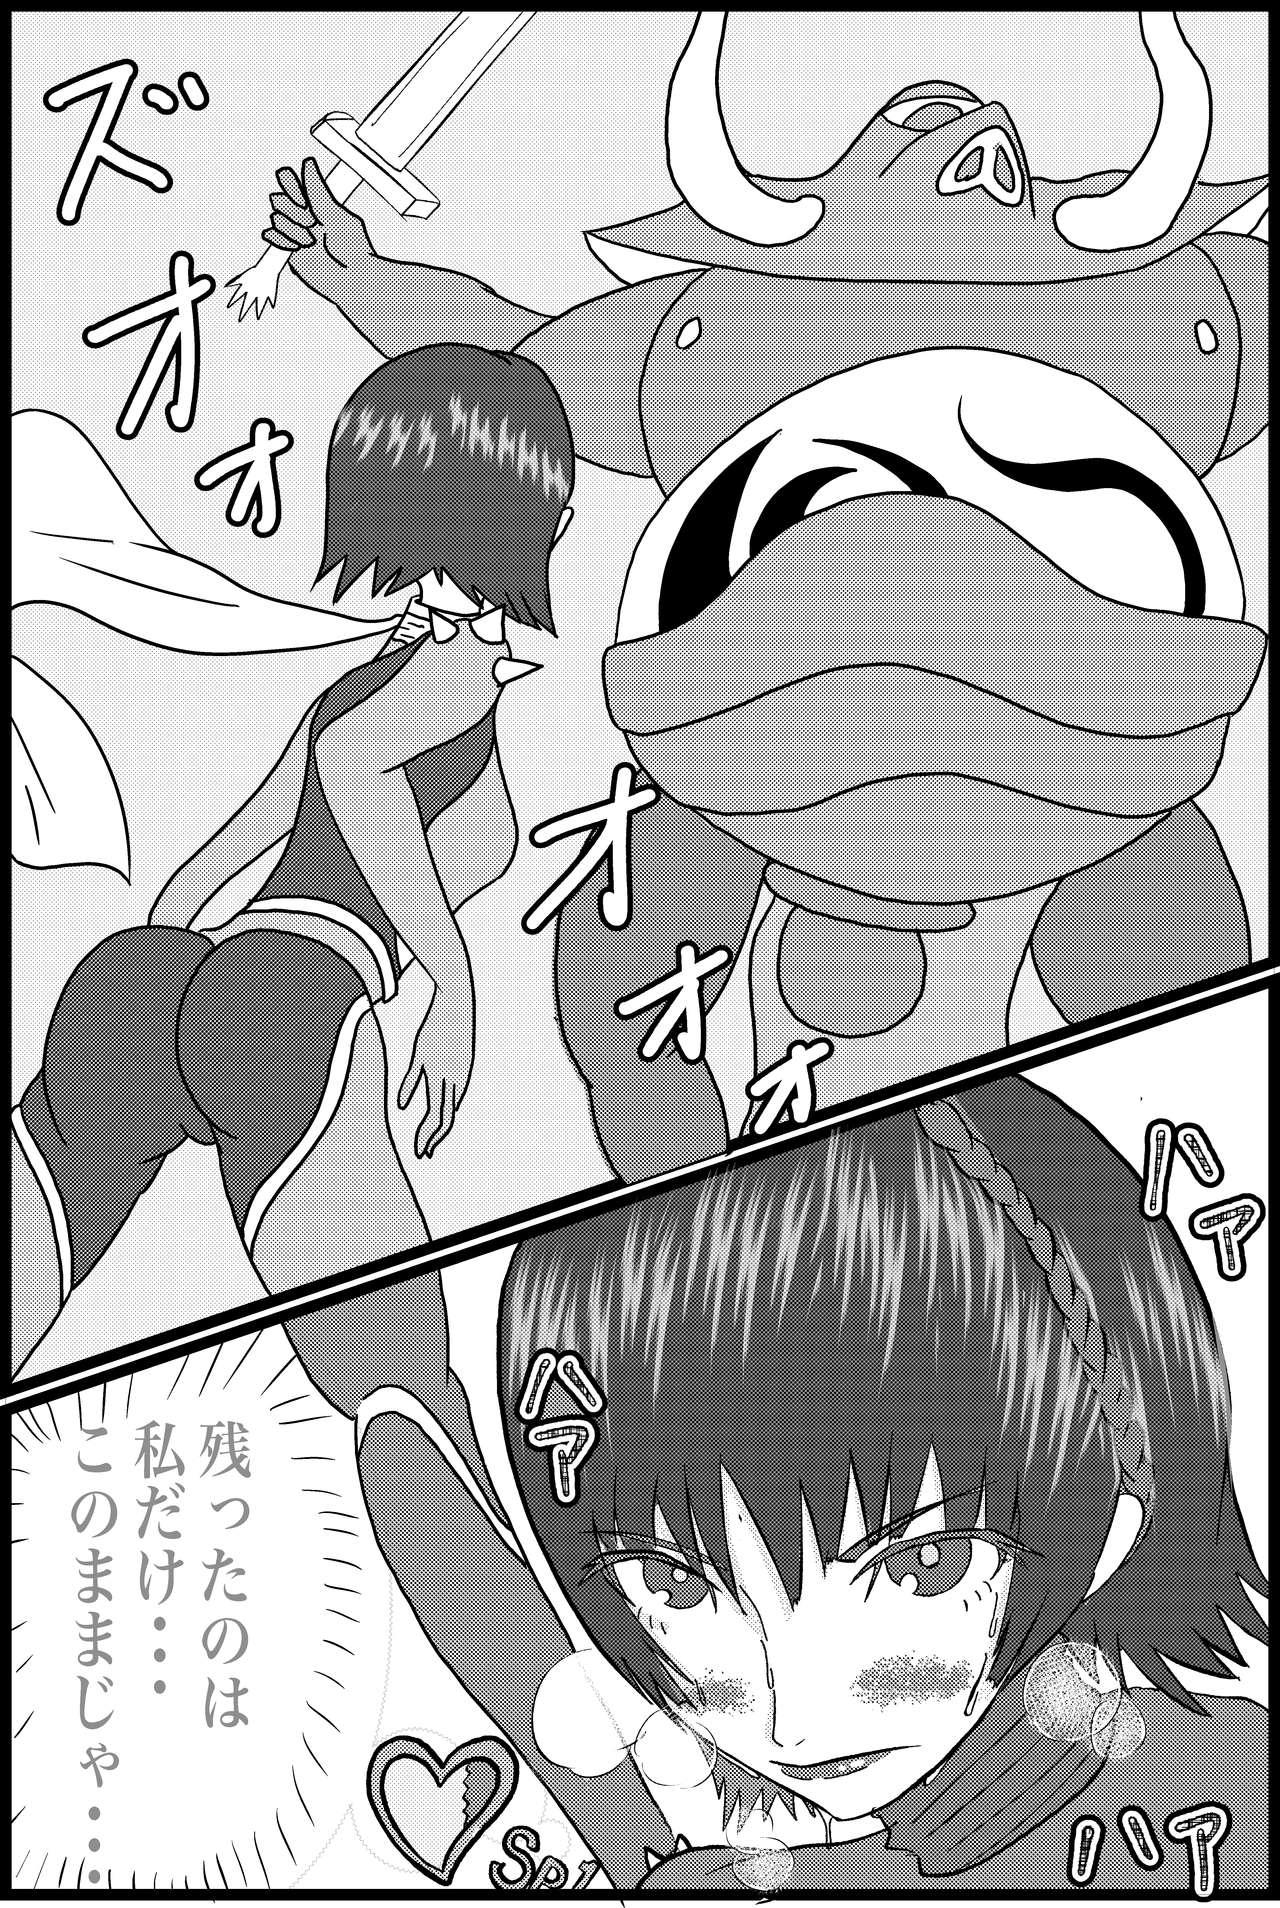 3way Kokoro no Kaitoudan VS Jakuten Debuff Kusuguri Jigoku - Persona 5 Fit - Page 4